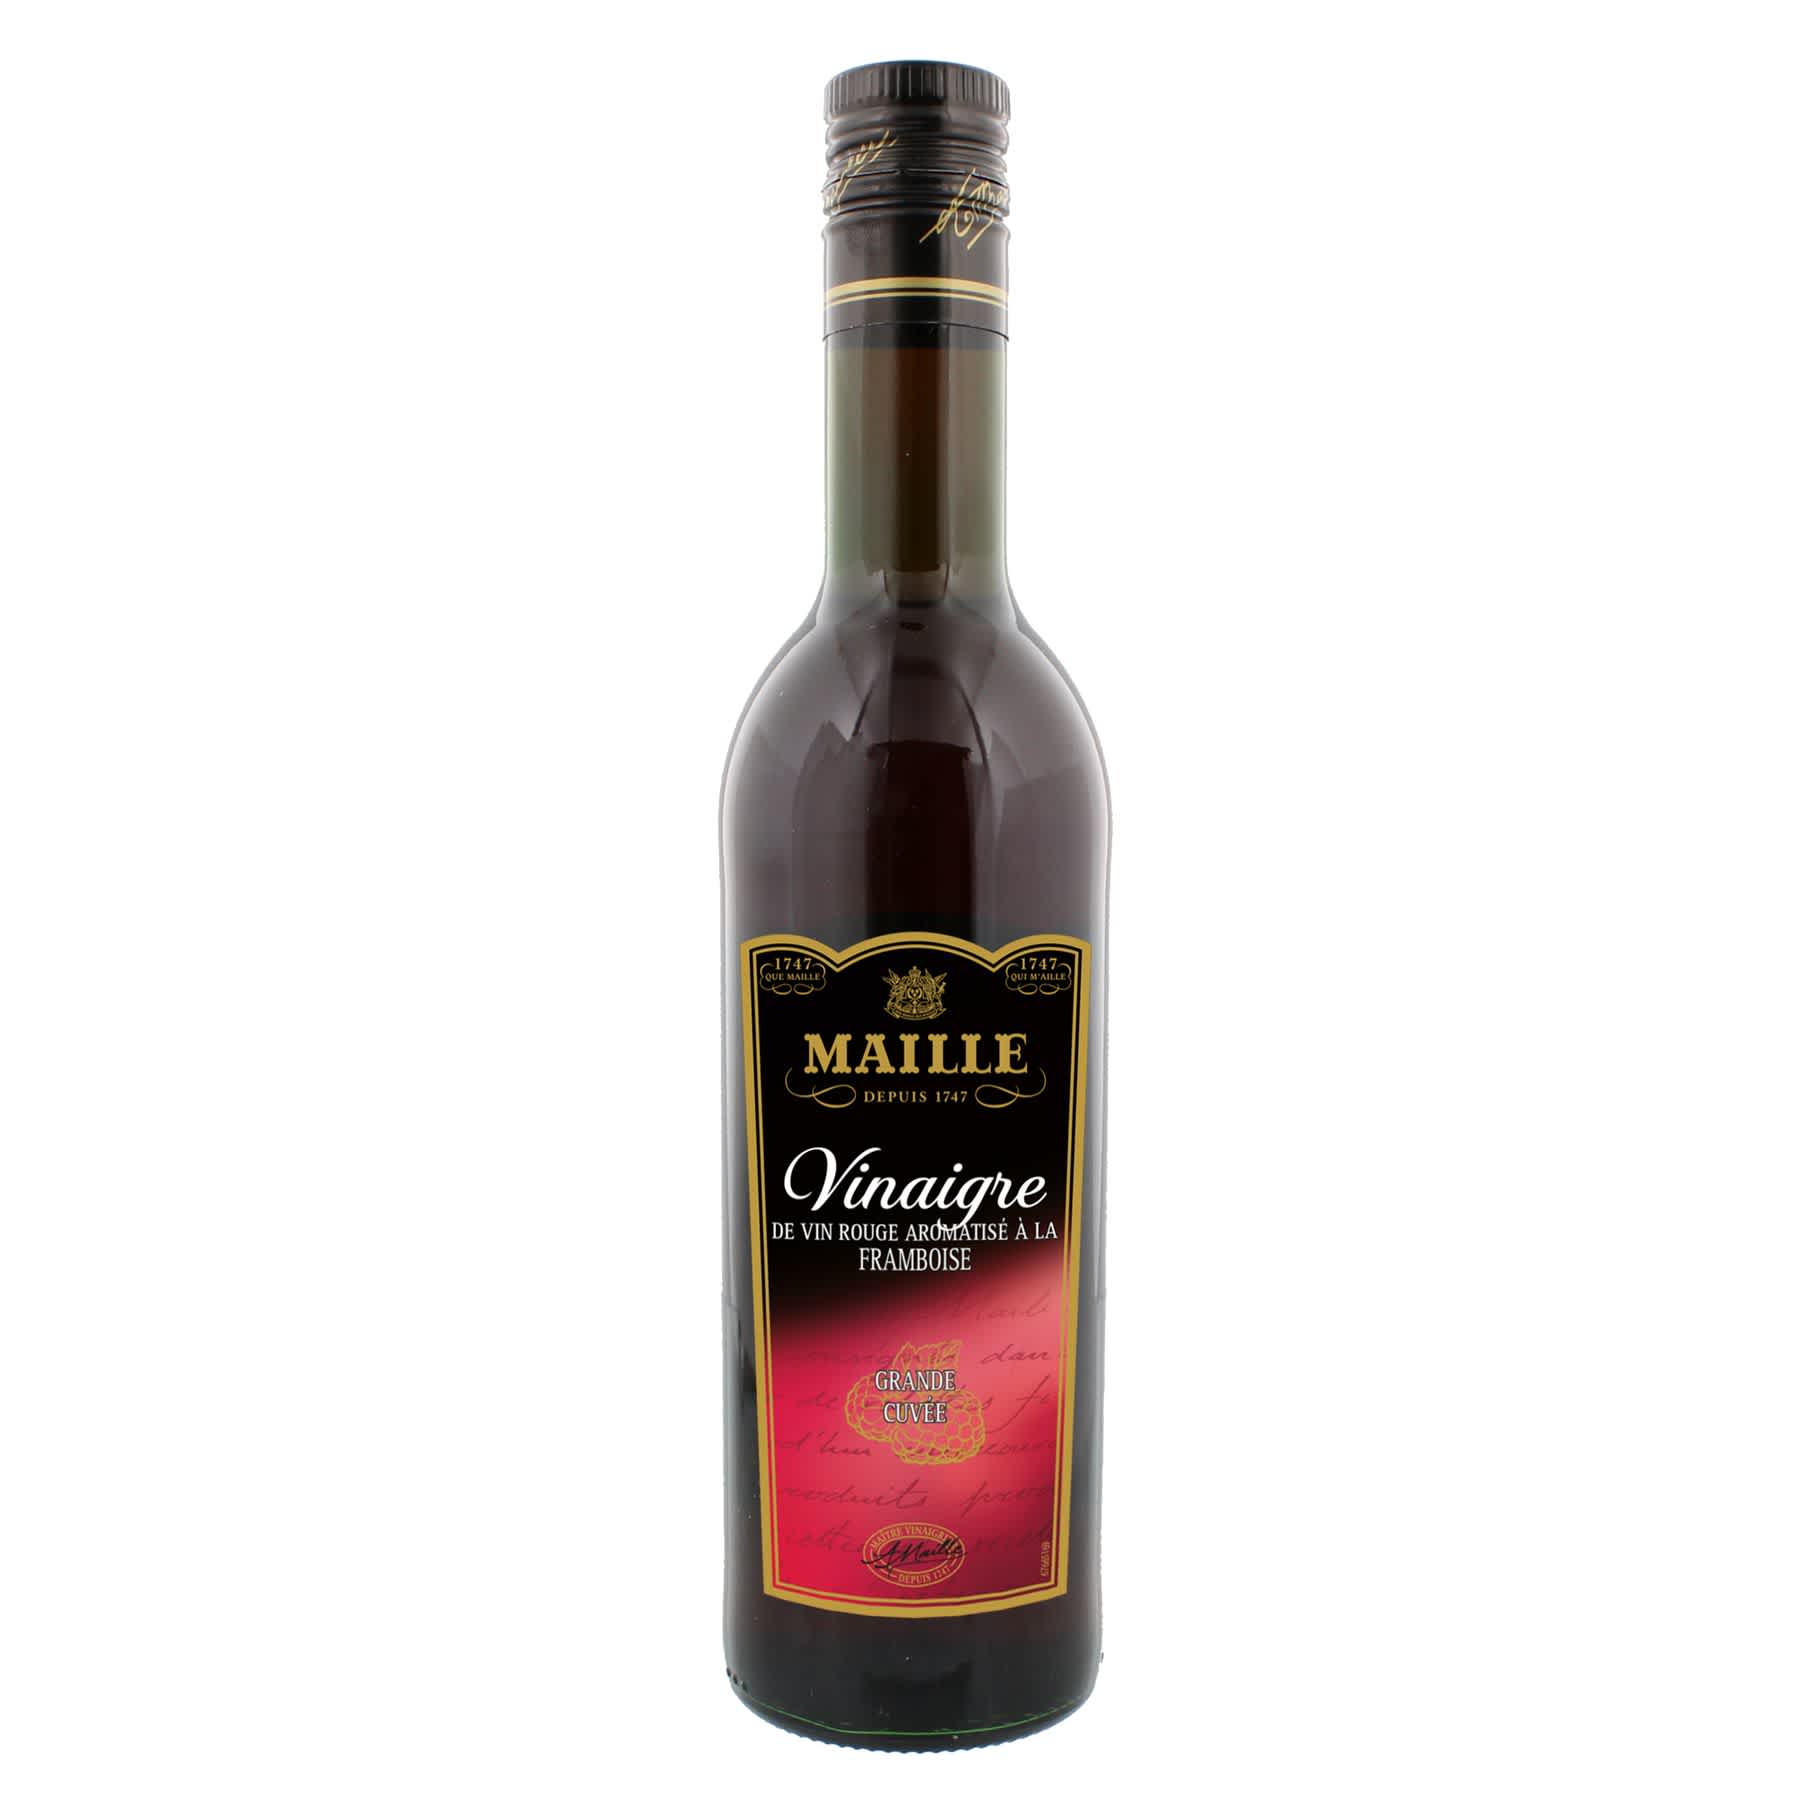 Maille - Vinaigre de Vin Rouge aromatisé à la Framboise 50 cl, overview